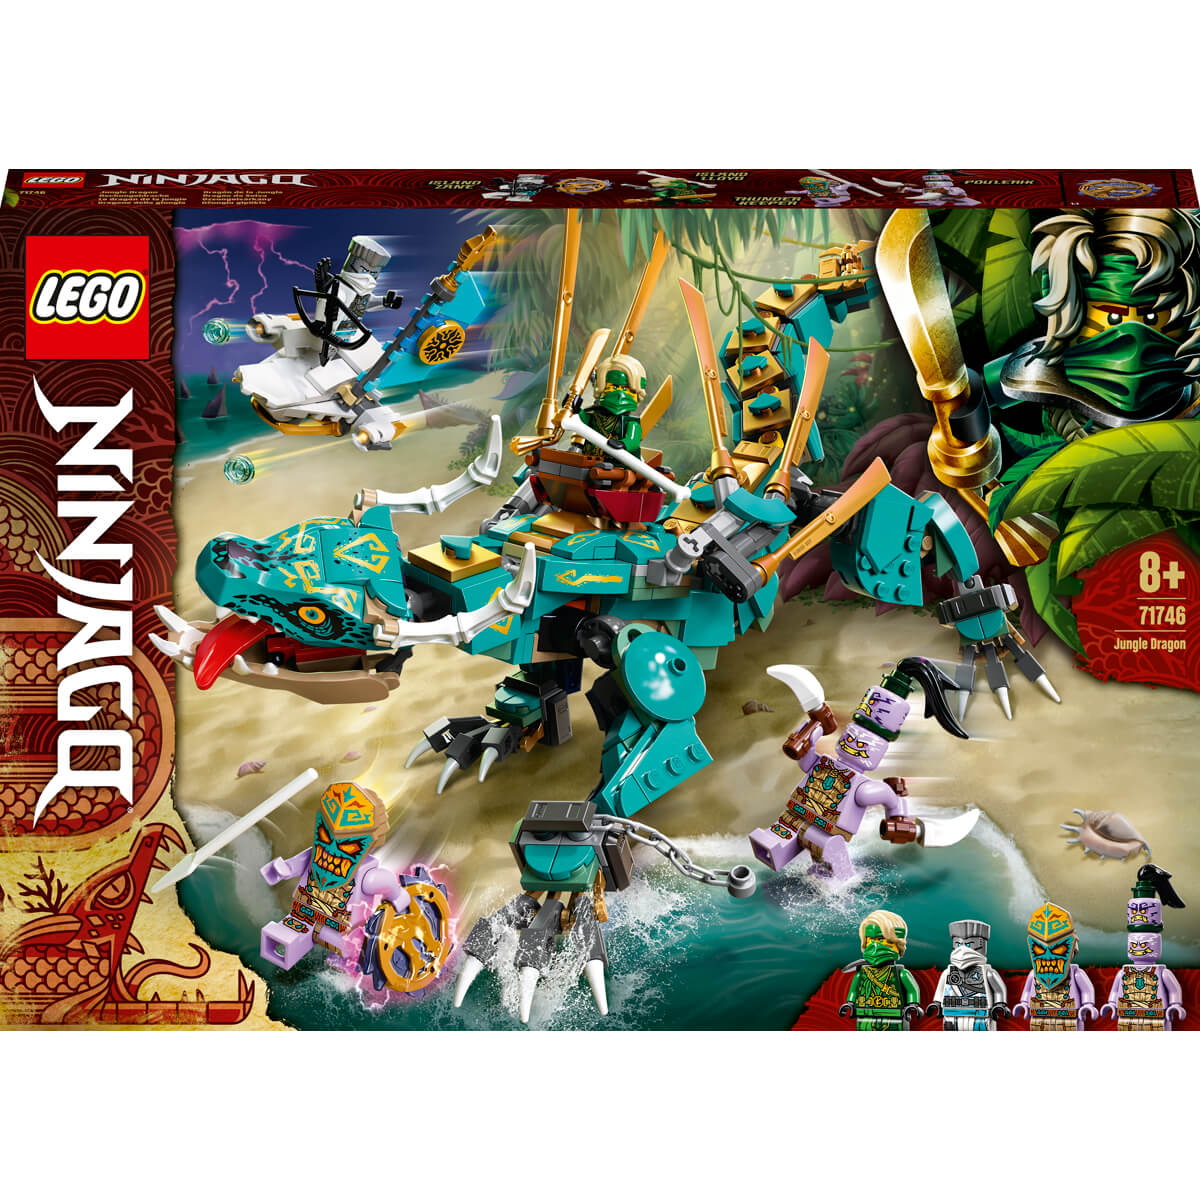 ΠΑΙΔΙ | Παιχνίδια | LEGO | NINJAGO 71746 Jungle Dragon